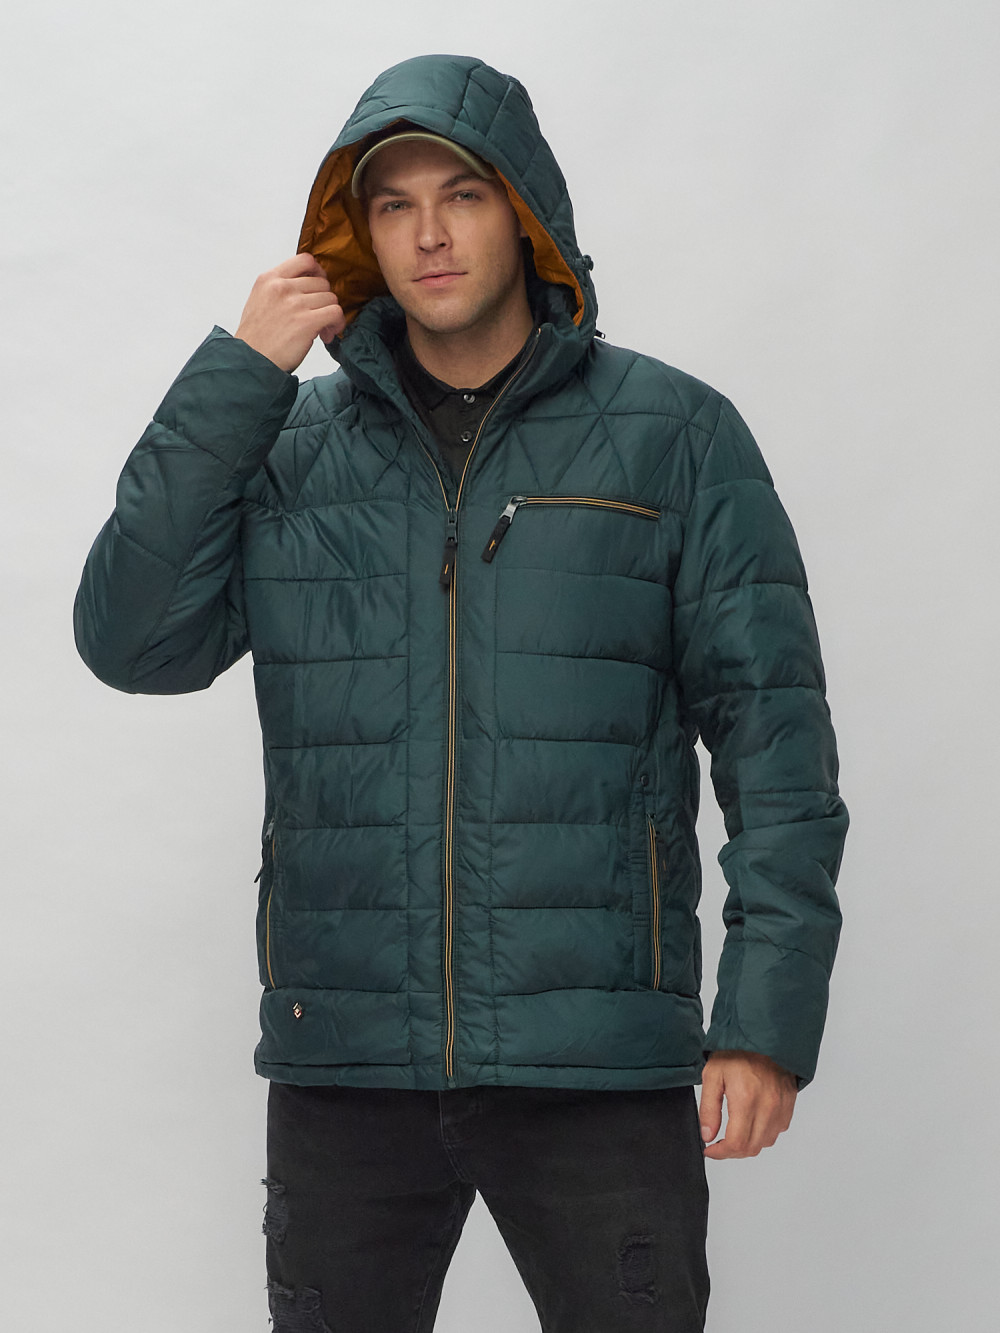 Купить куртку мужскую спортивную весеннюю оптом от производителя недорого в Москве 62187TZ 1